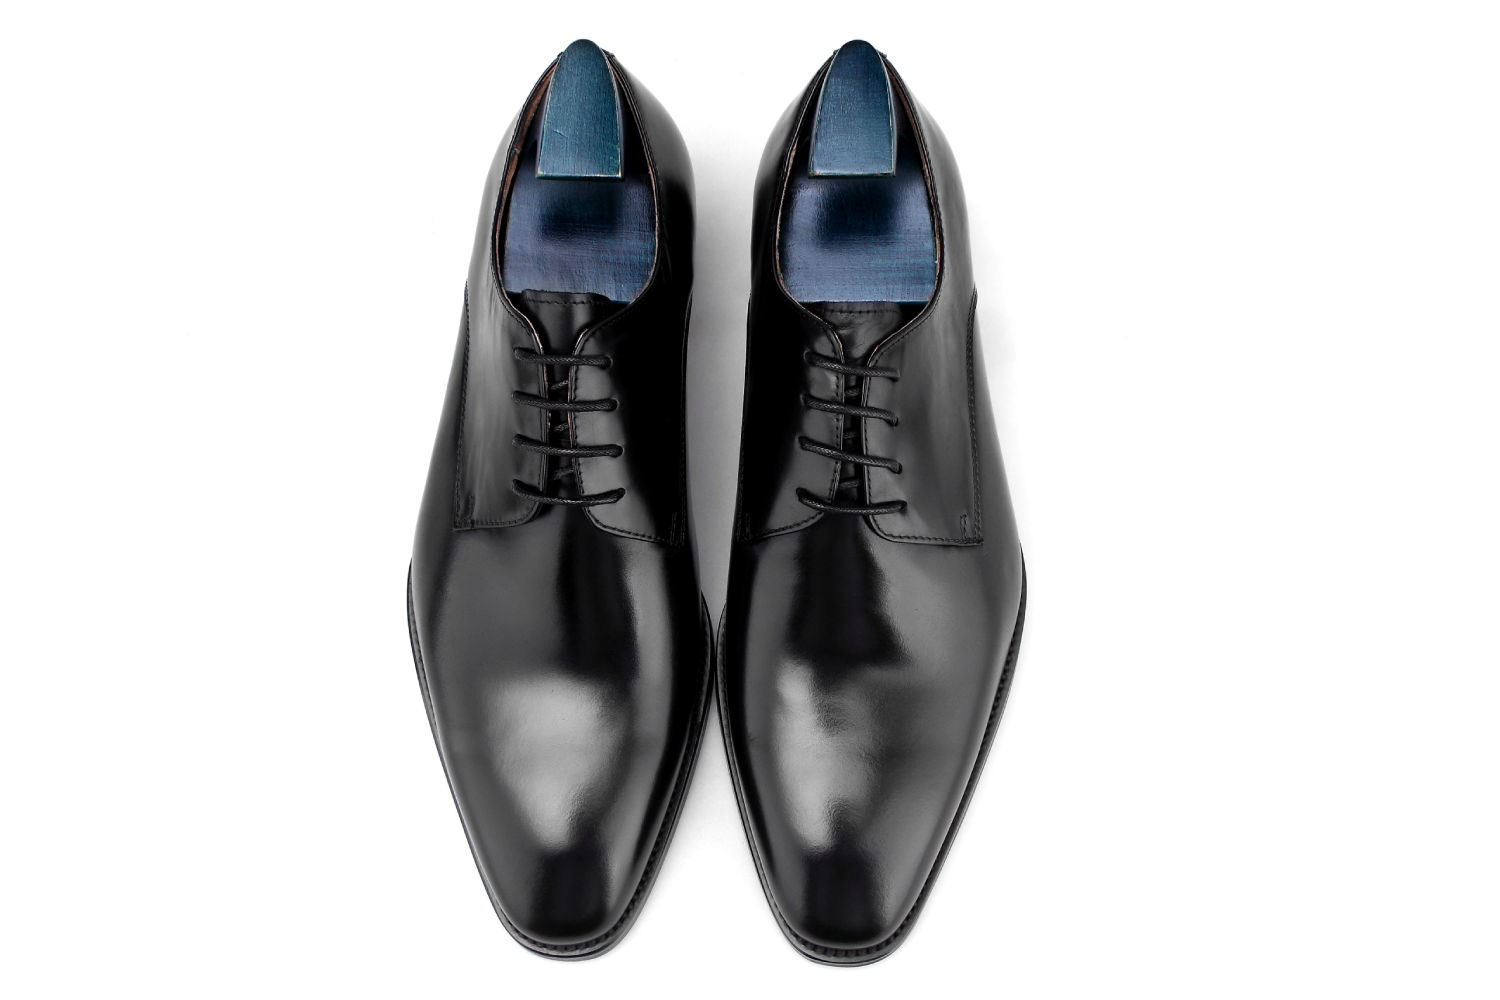 Buy Black Formal Shoes For Men